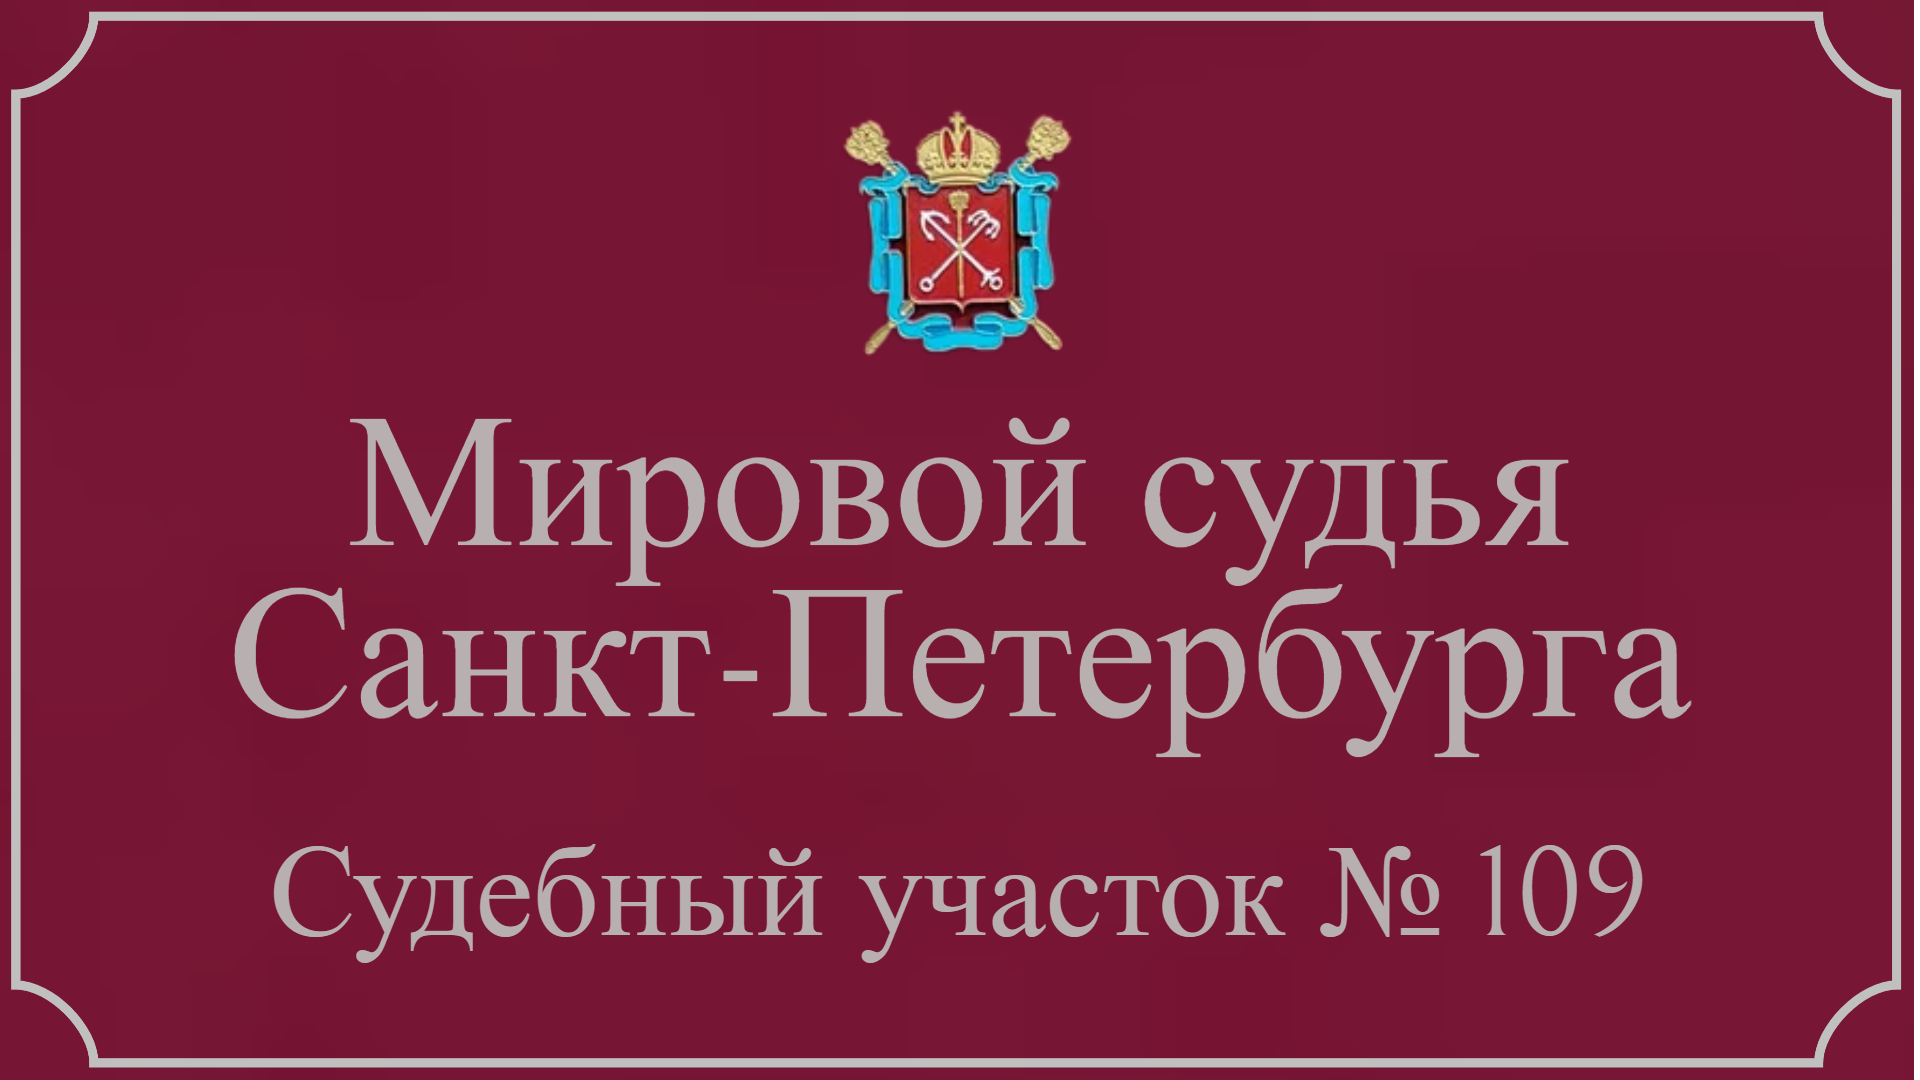 Информация по 109 судебному участку в Санкт-Петербурге.